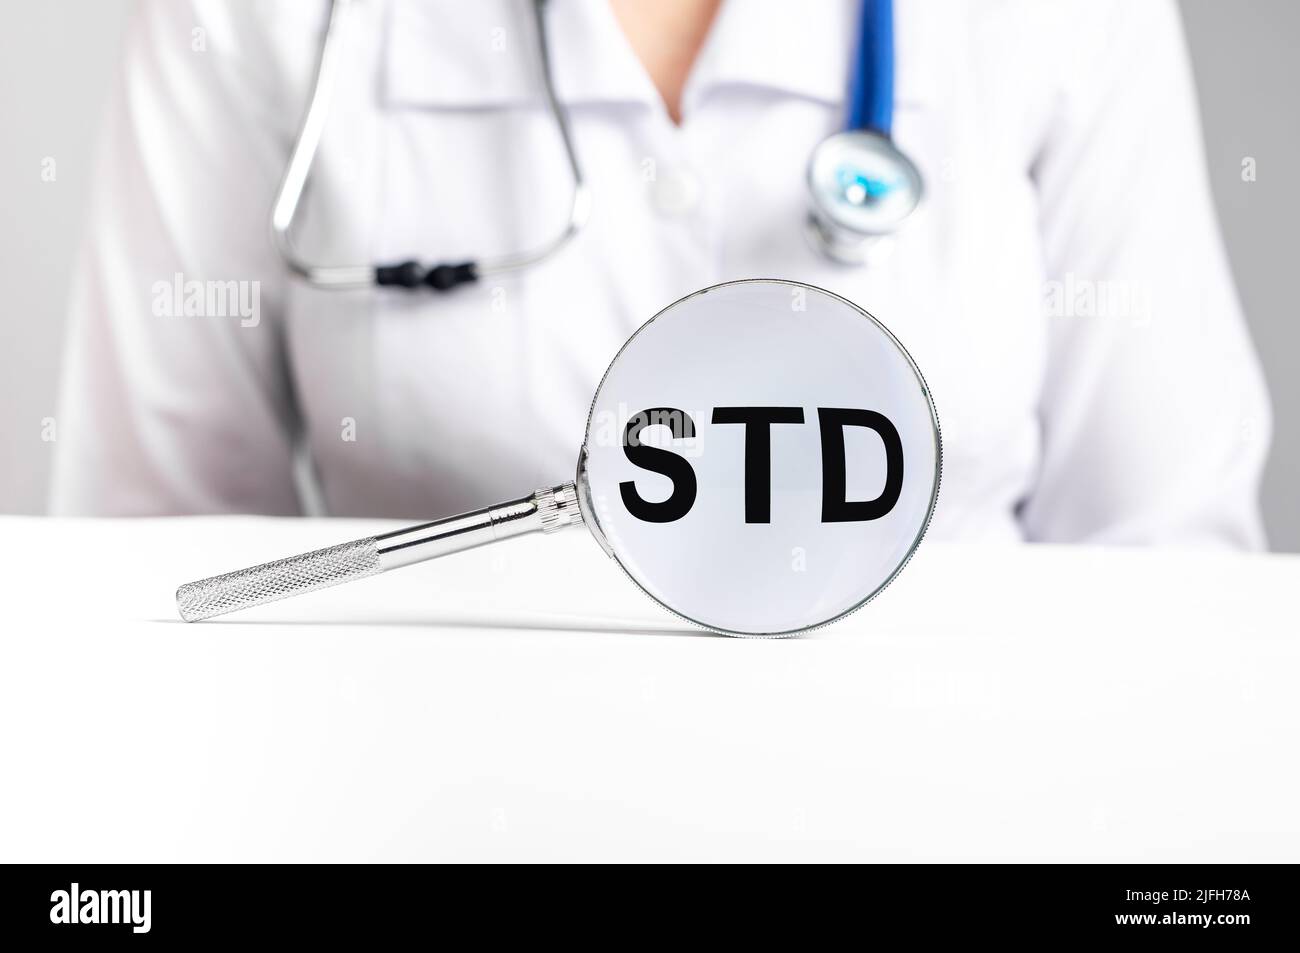 Acronimo STD, malattia medica attraverso la lente di ingrandimento. Foto di alta qualità Foto Stock